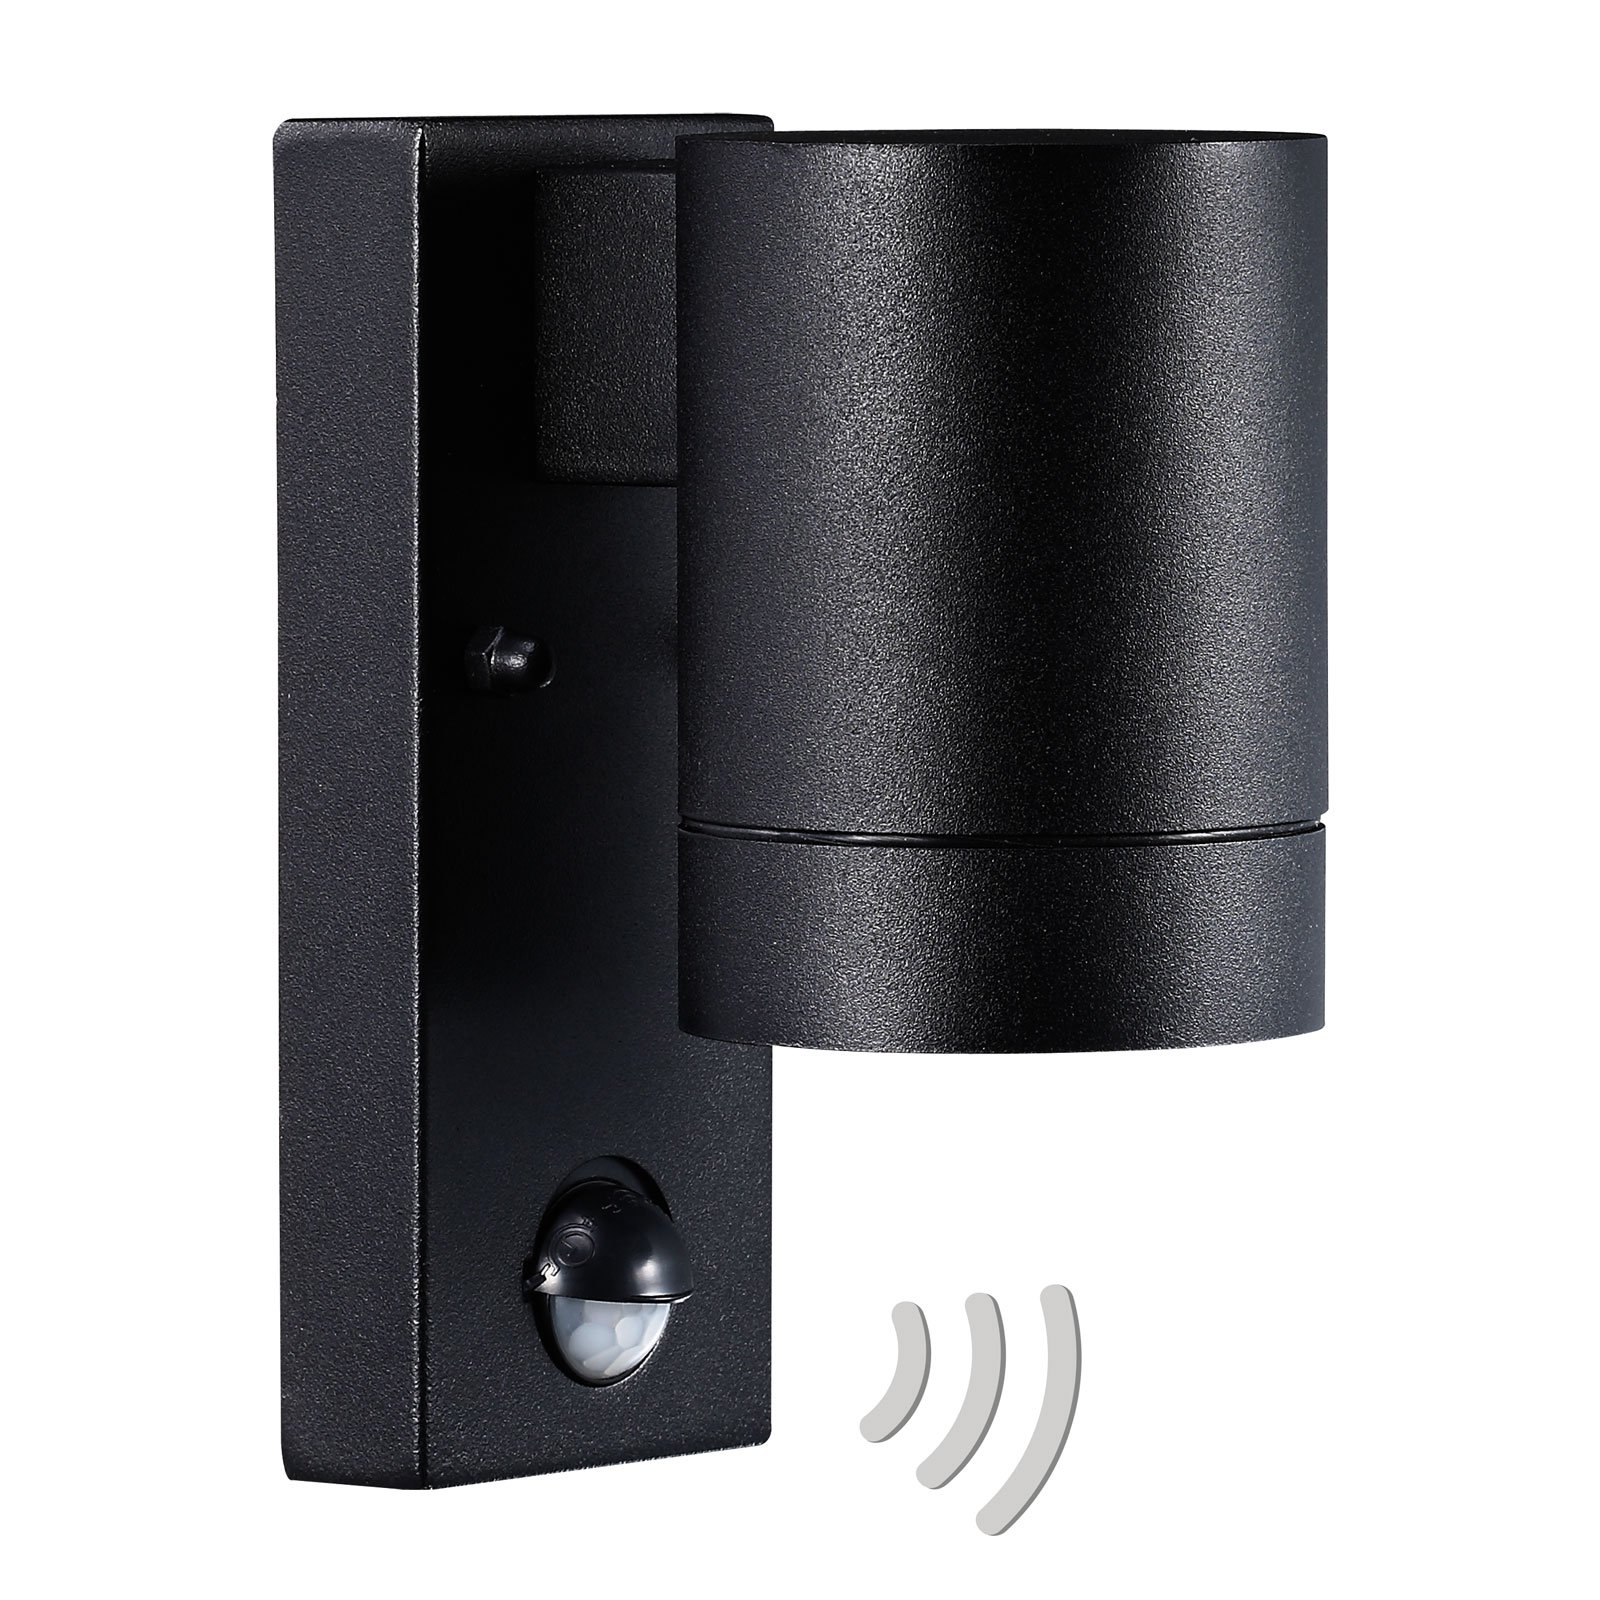 Buitenwandlamp Tin Maxi sensor, zwart